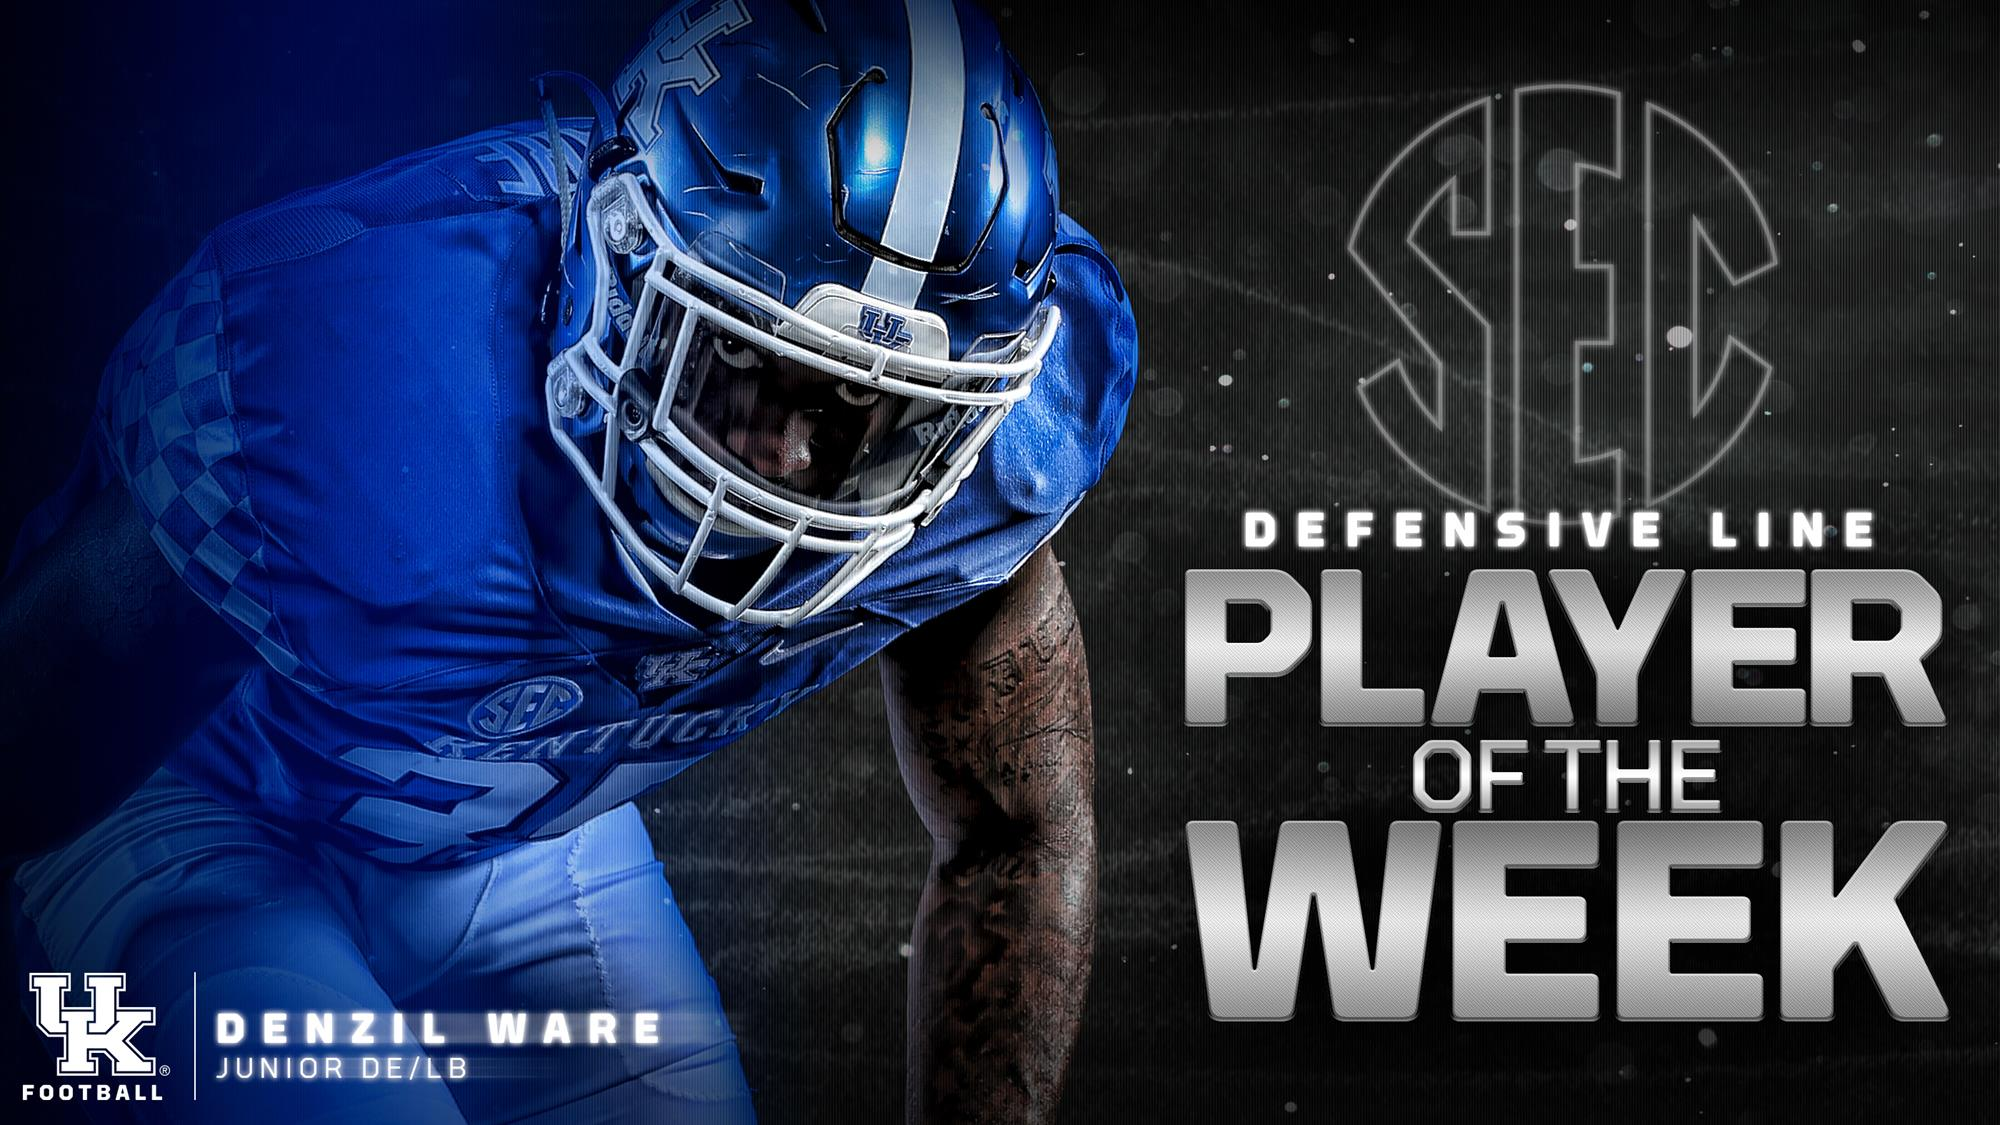 Ware Named SEC Defensive Lineman of the Week